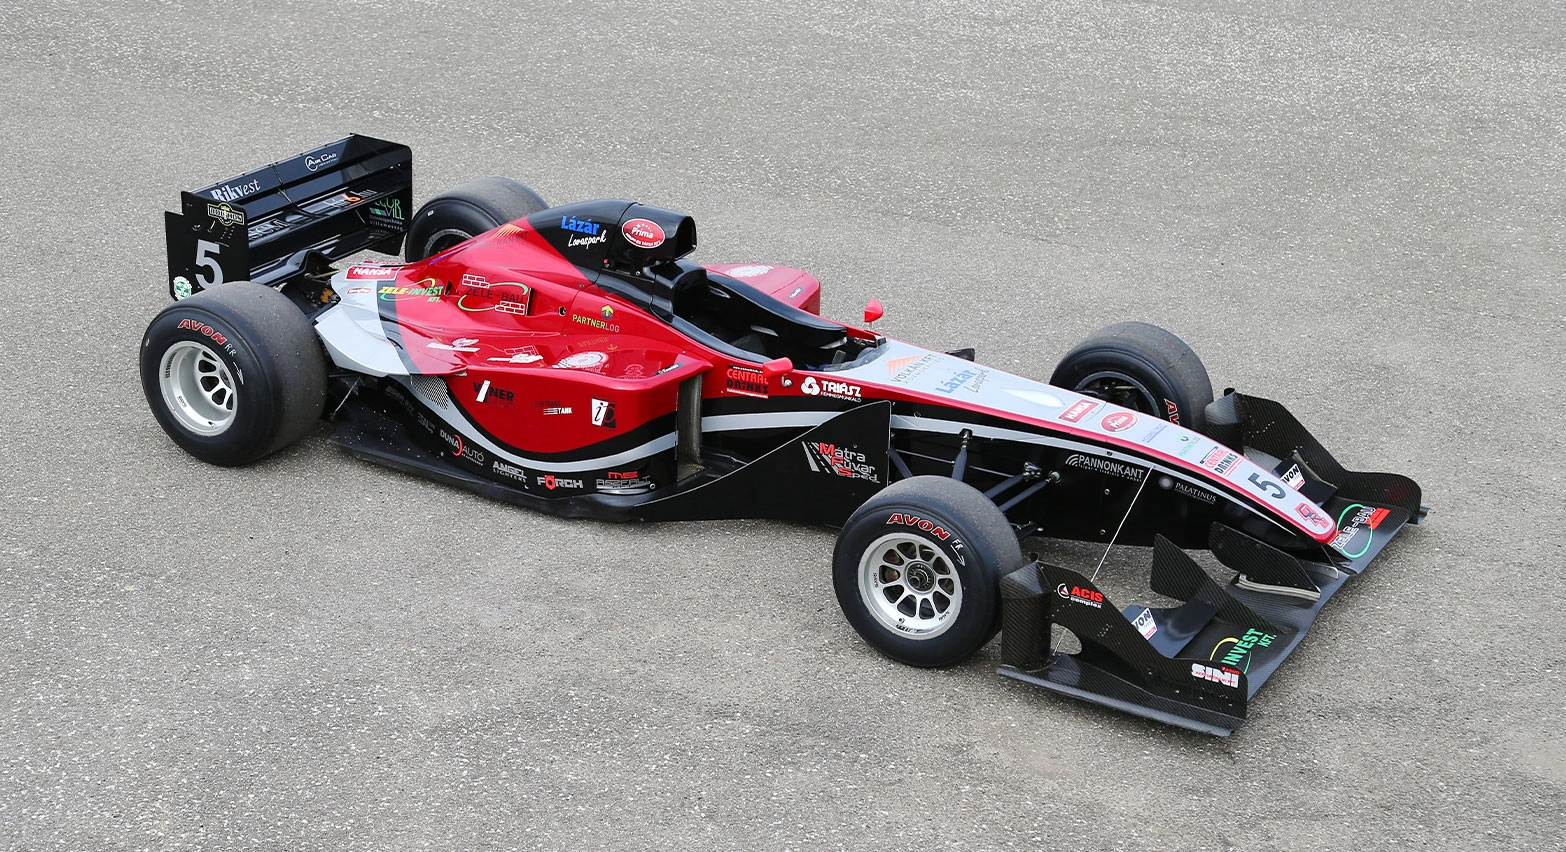 Reynard Zytek-Judd 93d race car standing